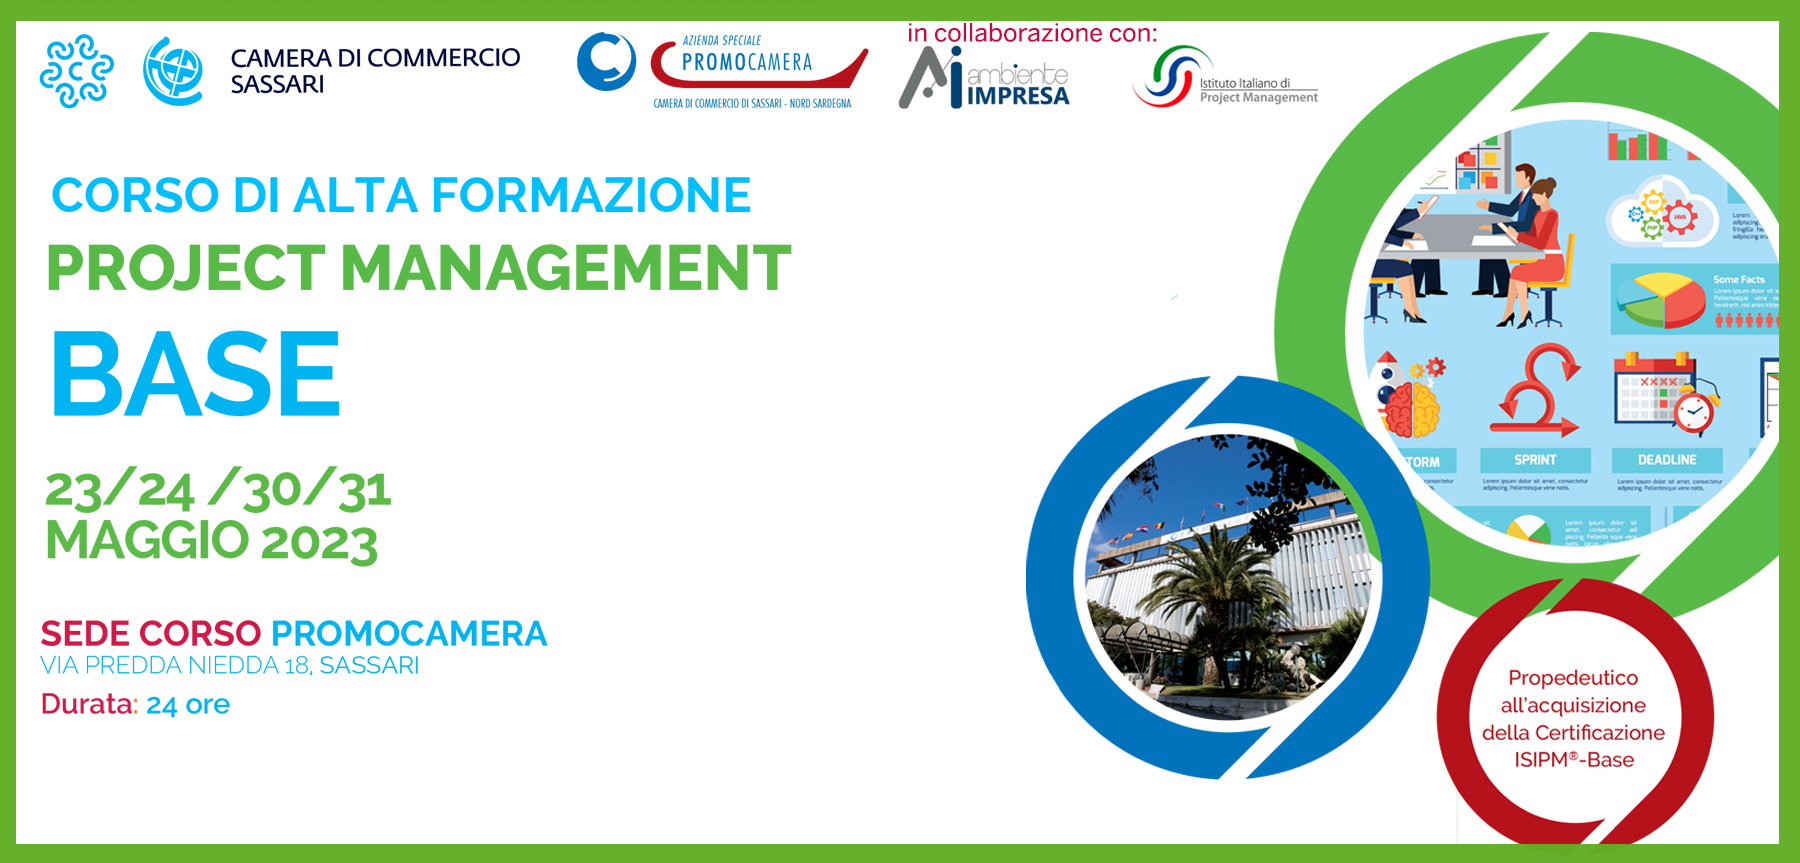 Project Magement Base MAGGIO 2023 Promocamera Sassari - Ambiente Impresa srl - Cagliari